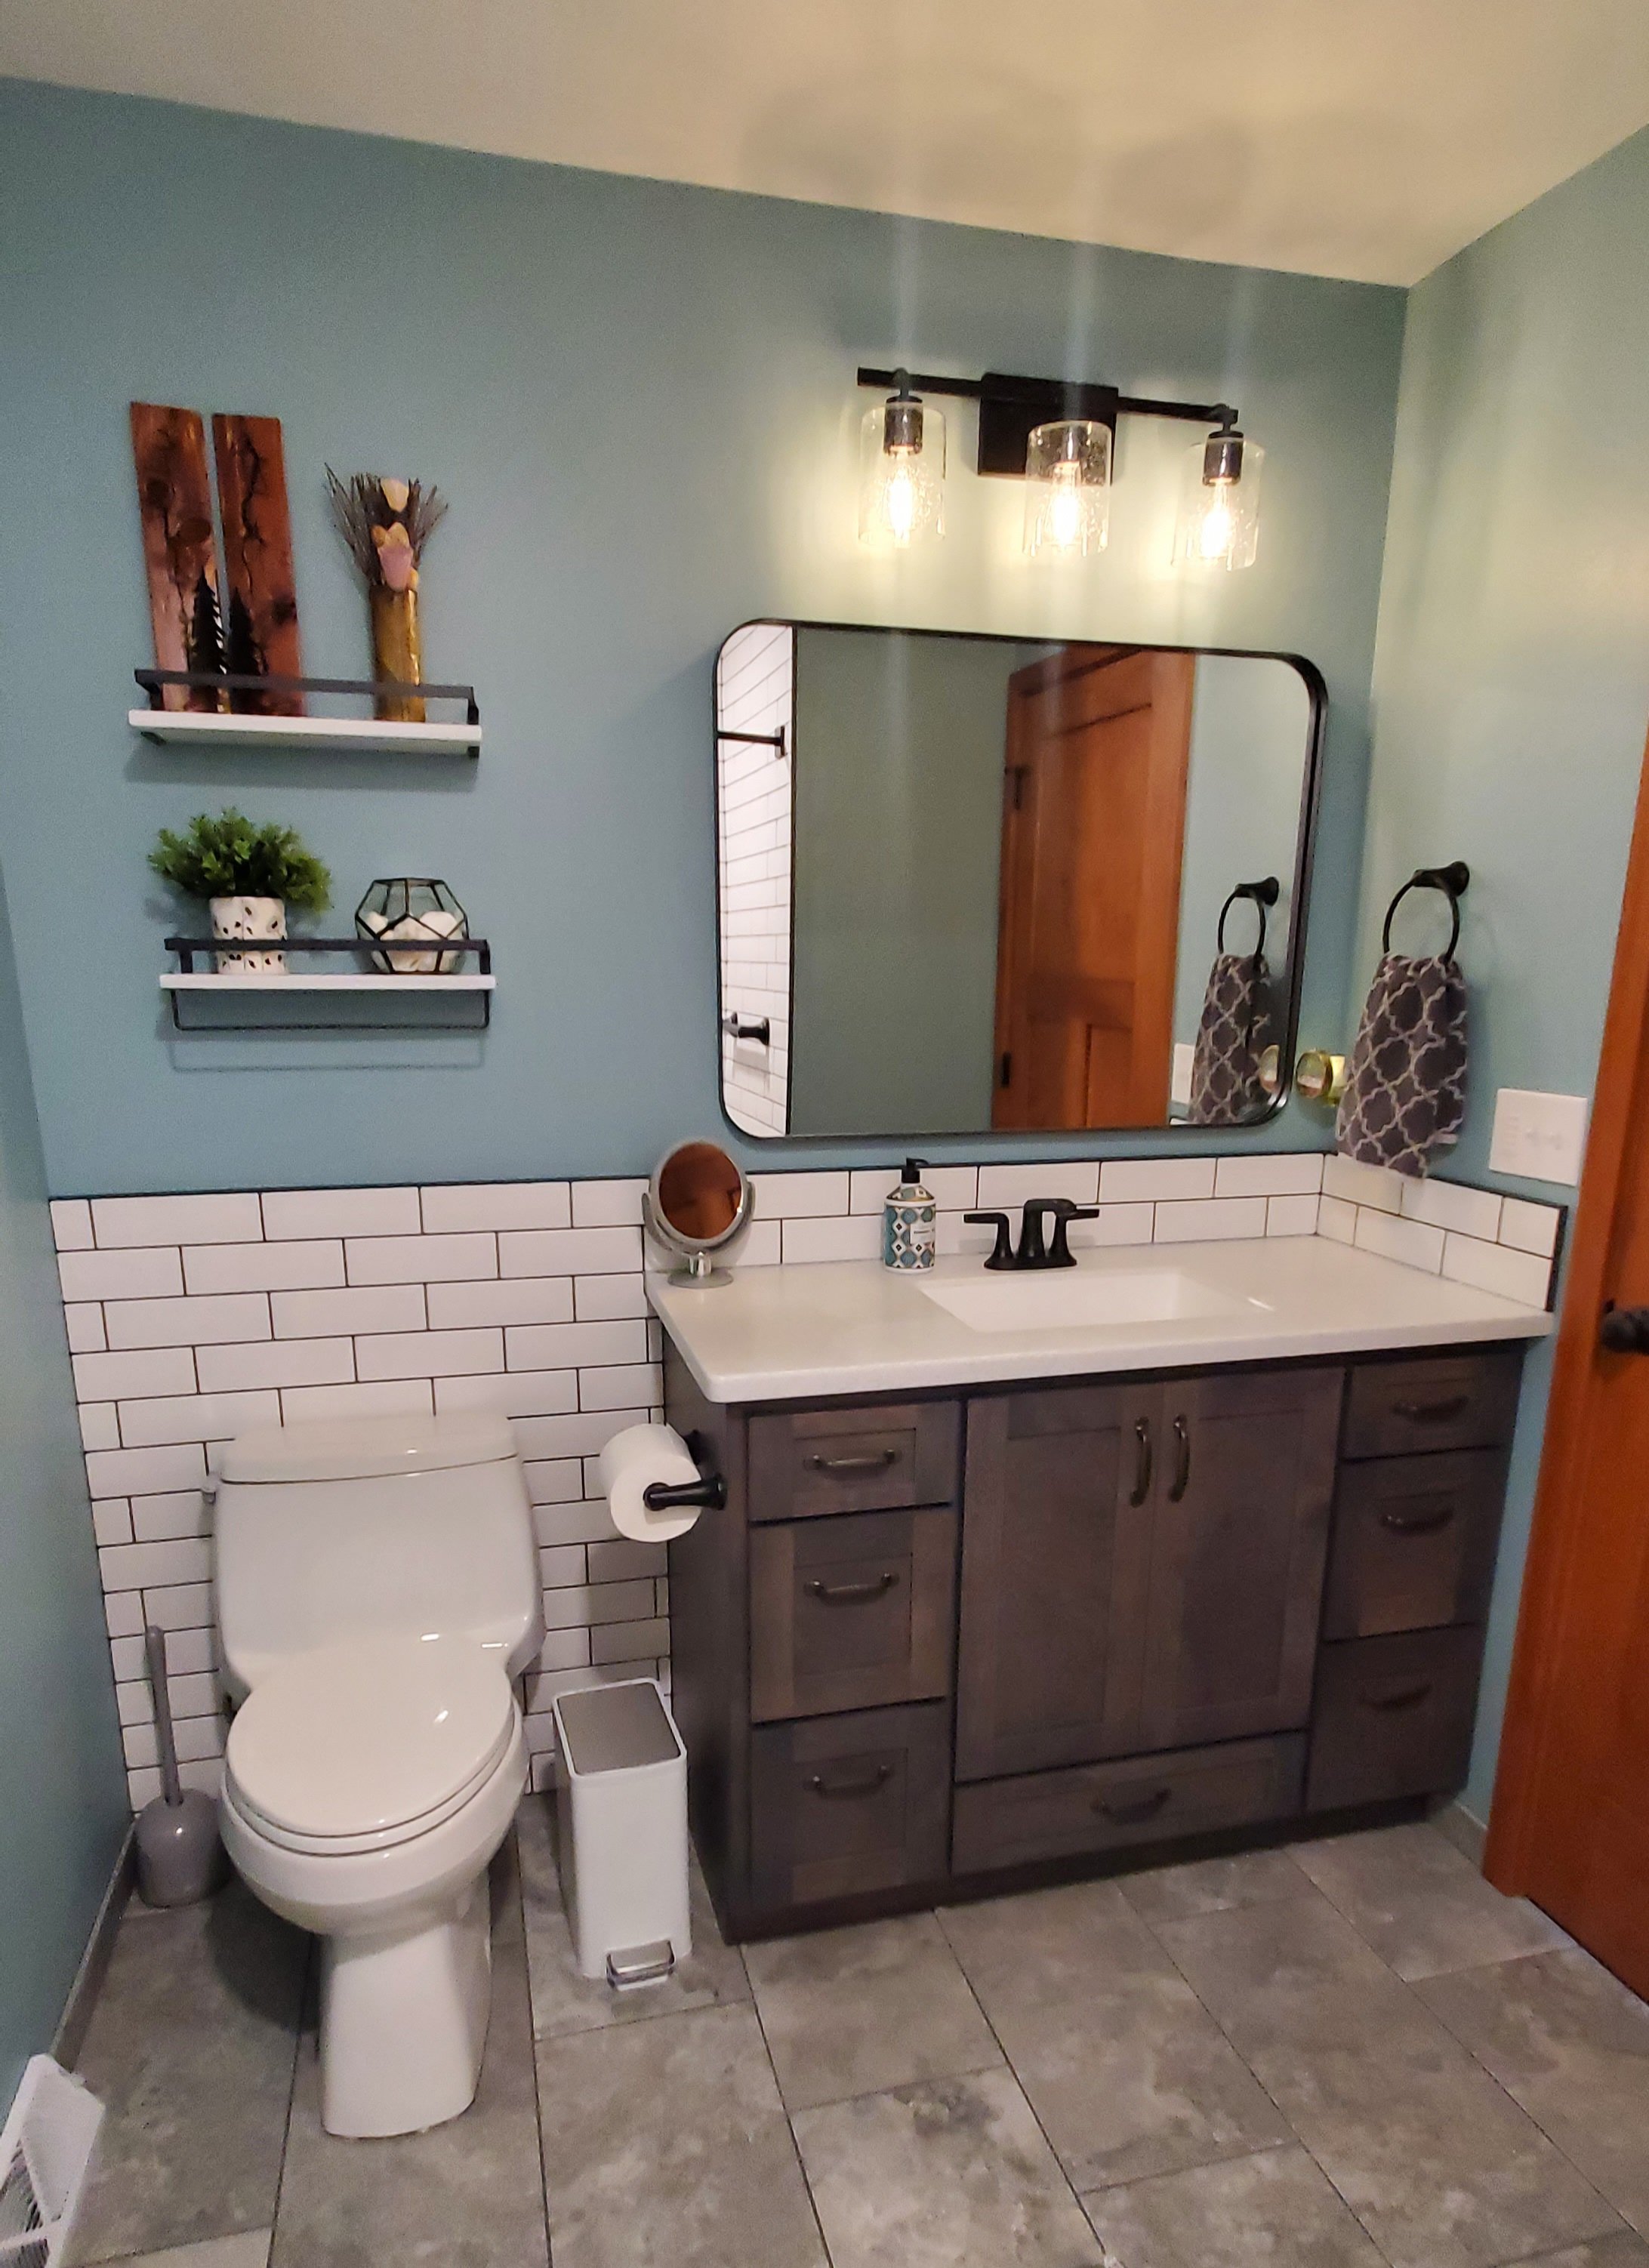 Rustic bathroom design